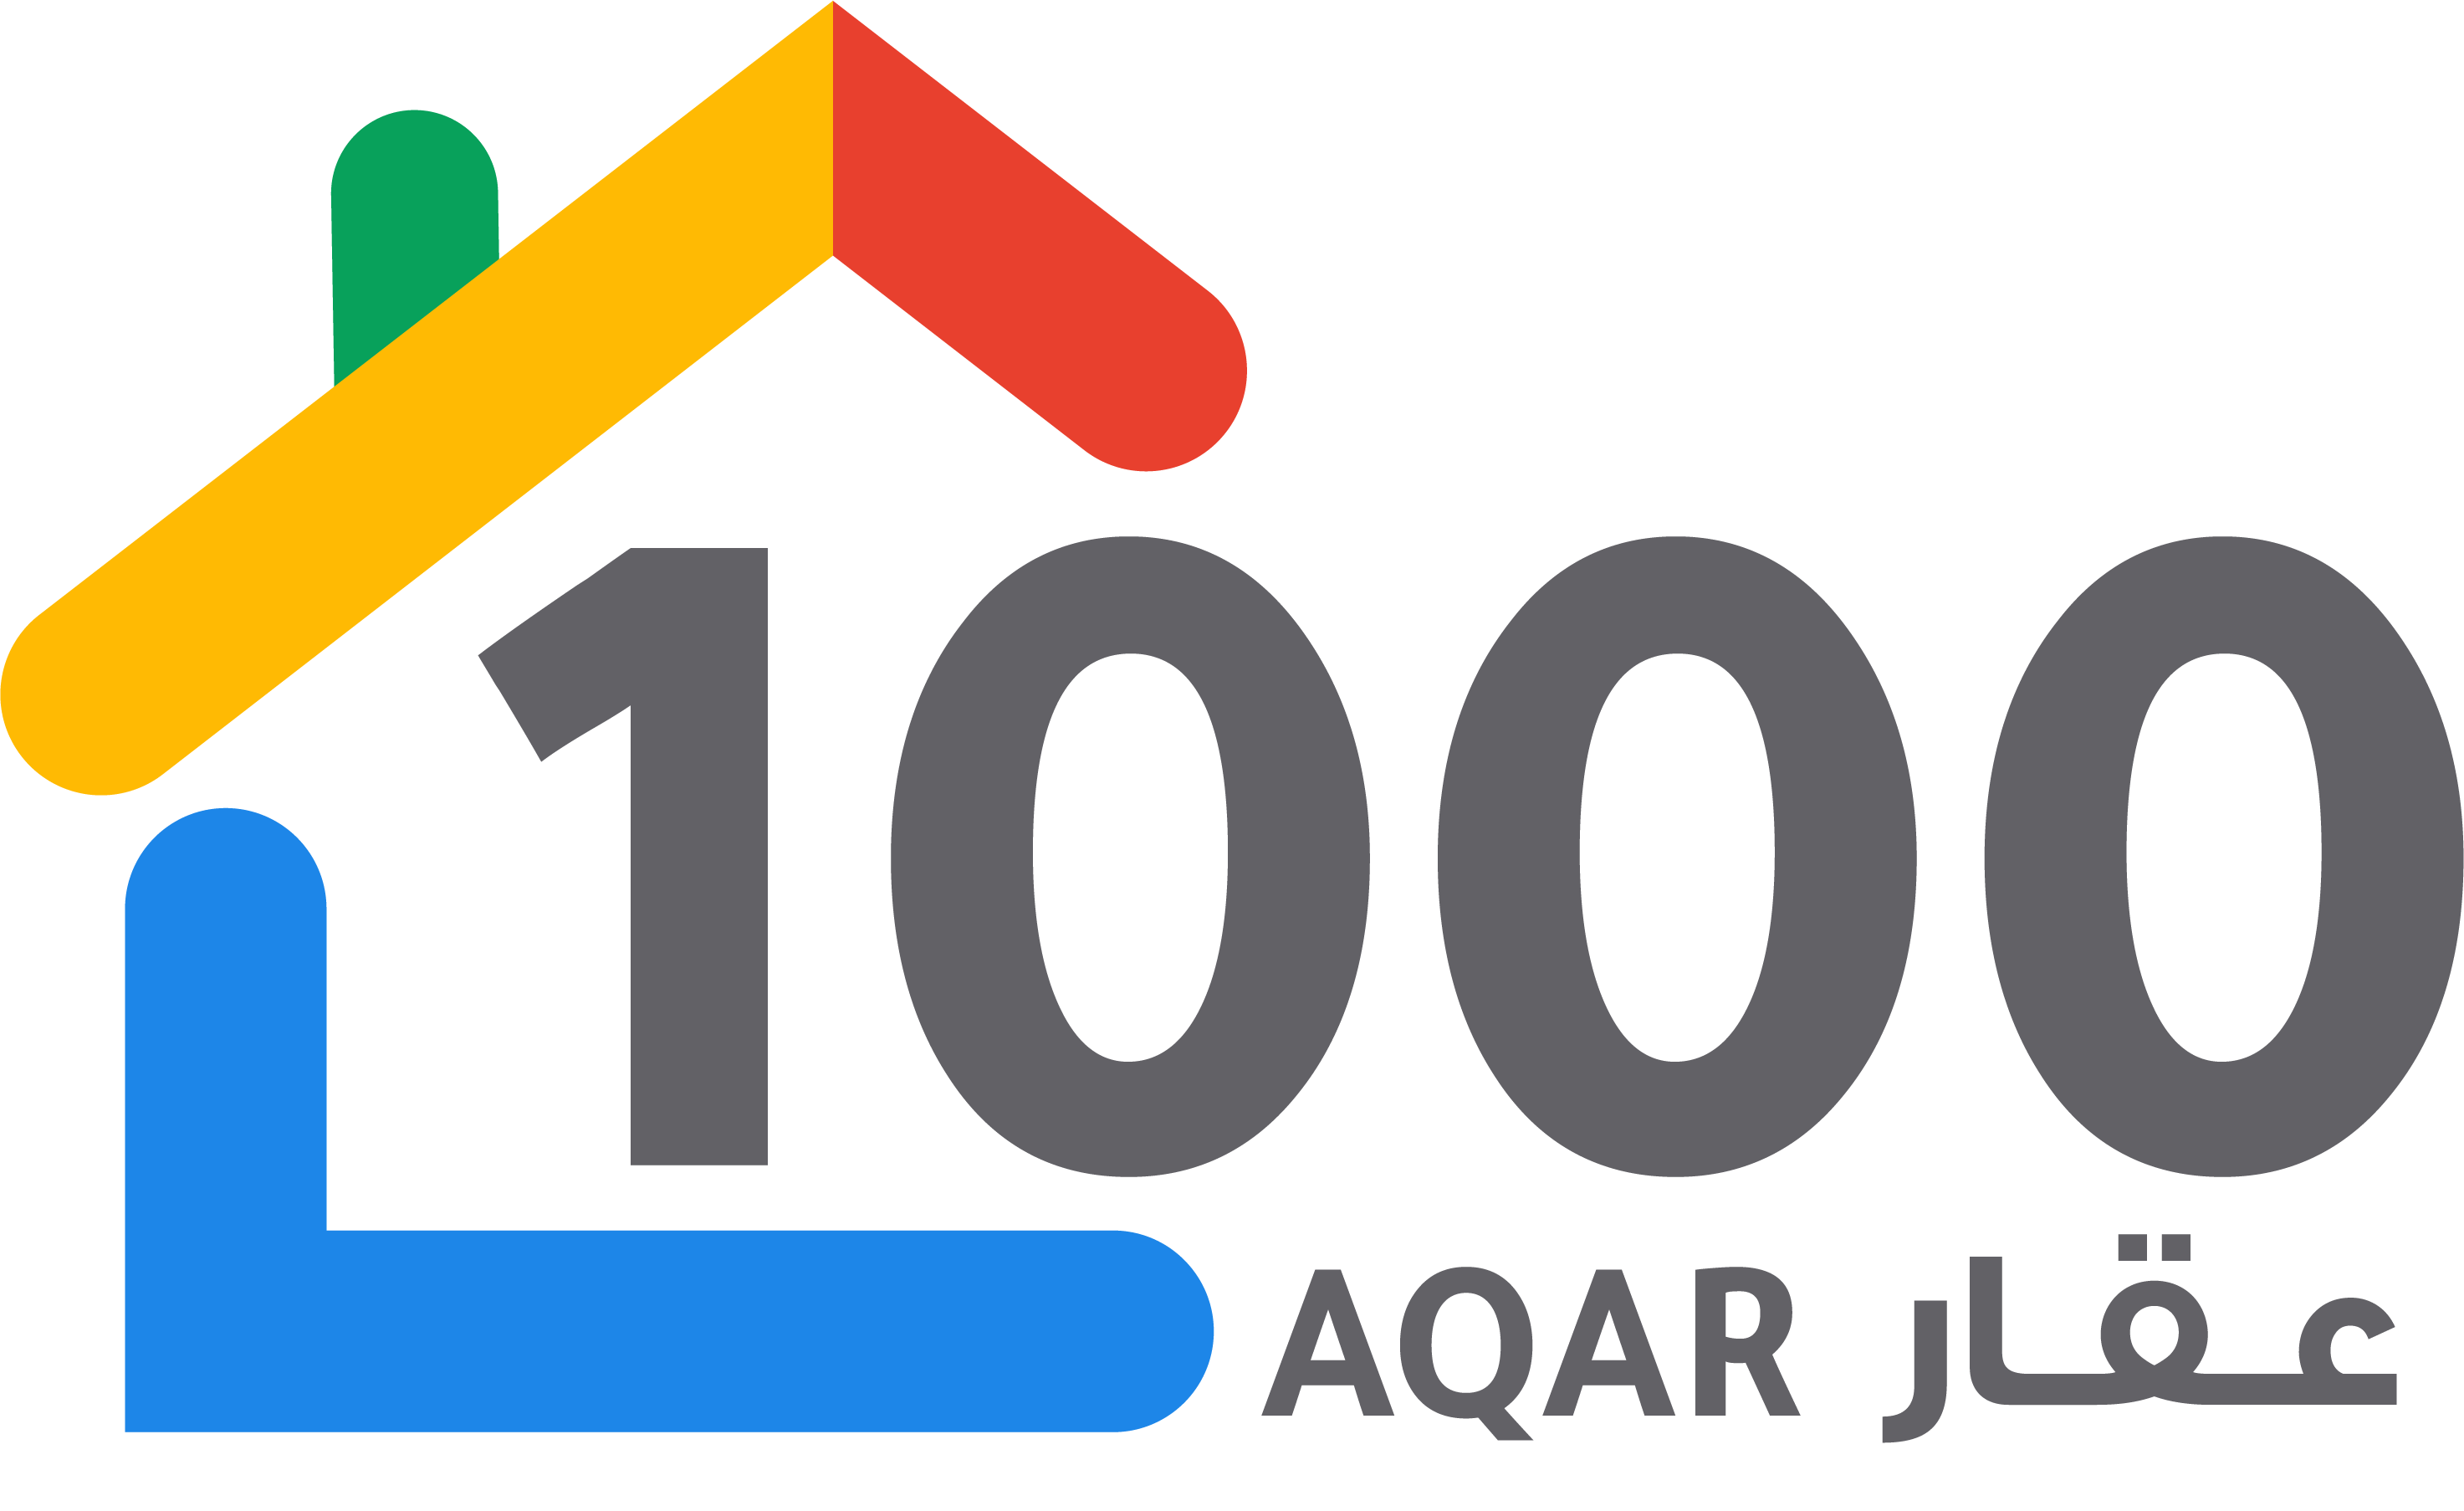 1000 aqar Logo